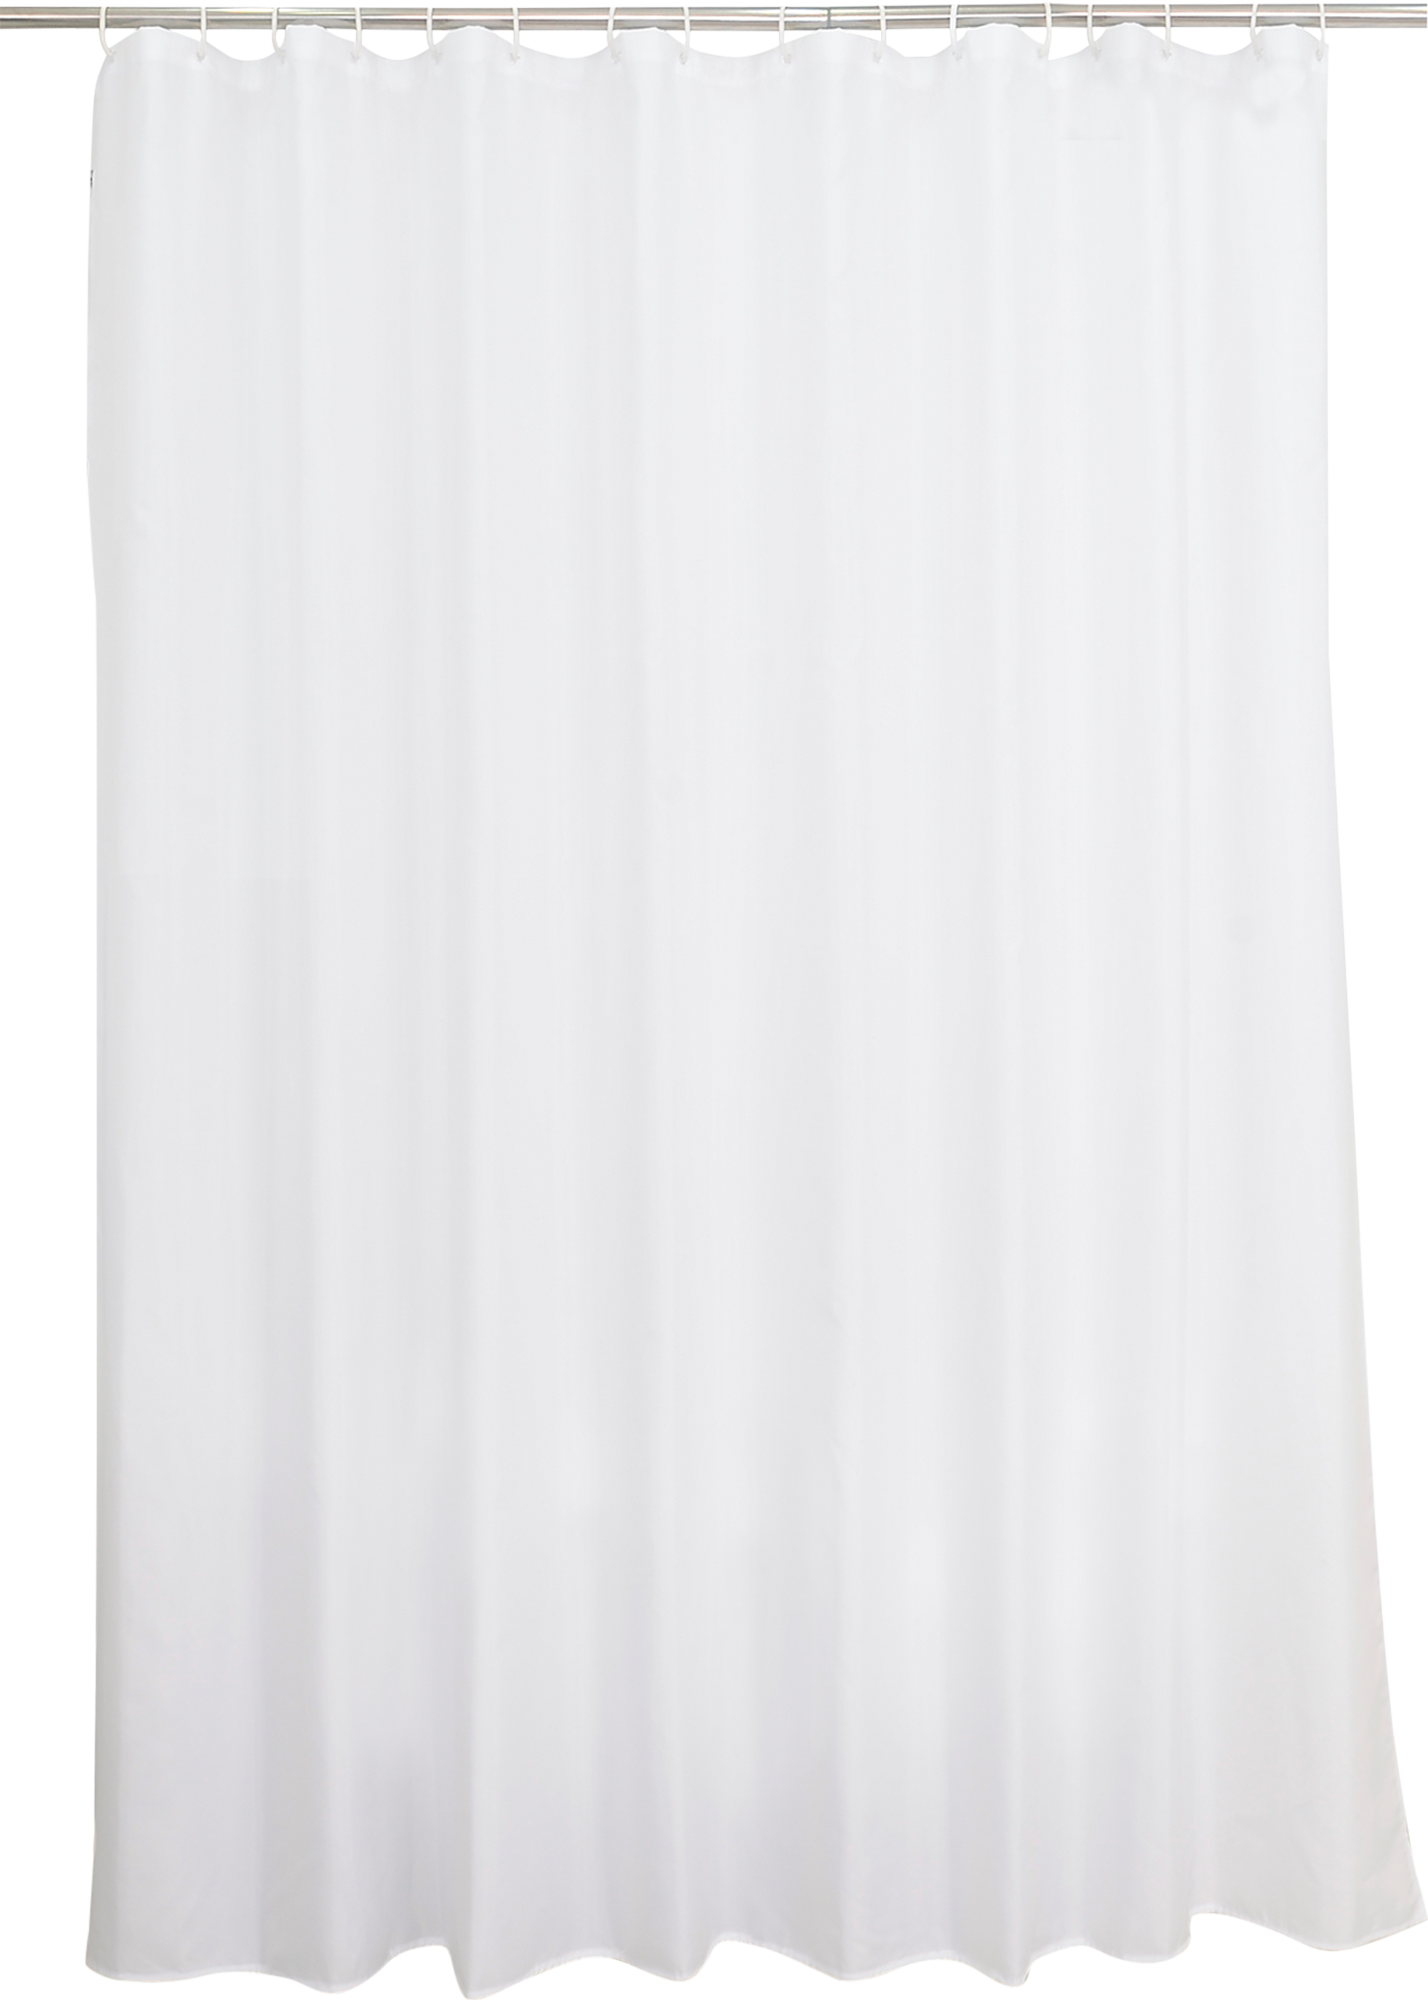 Cortina de baño happy blanco 240.0x200.0 cm